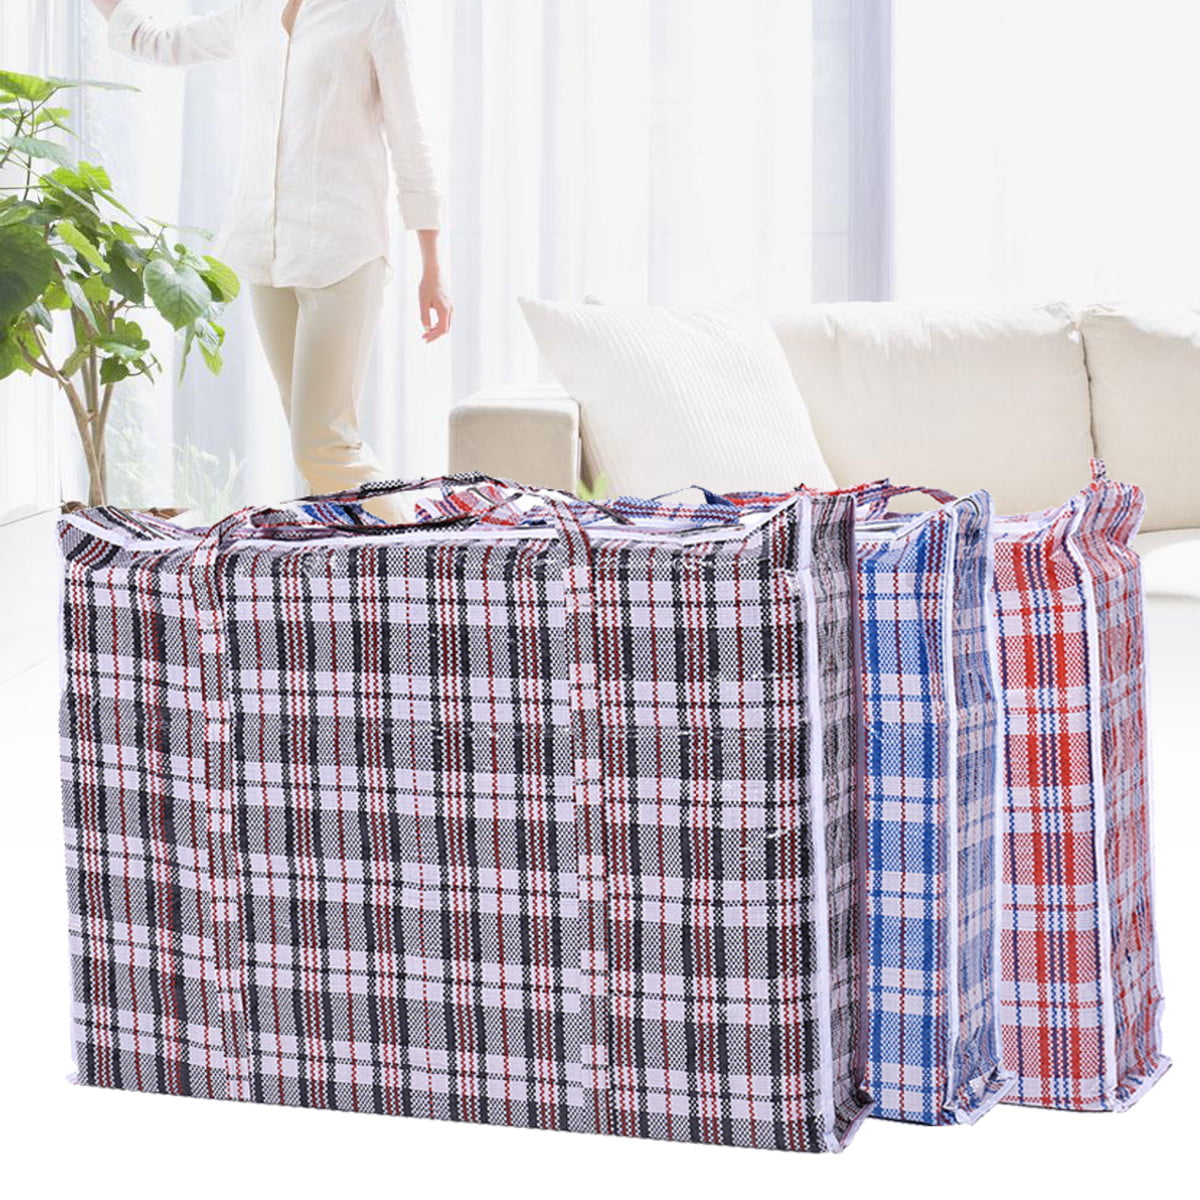 Moaere 6Pcs Extra-Large Plastic Checkered Storage Laundry Shopping Bags ...